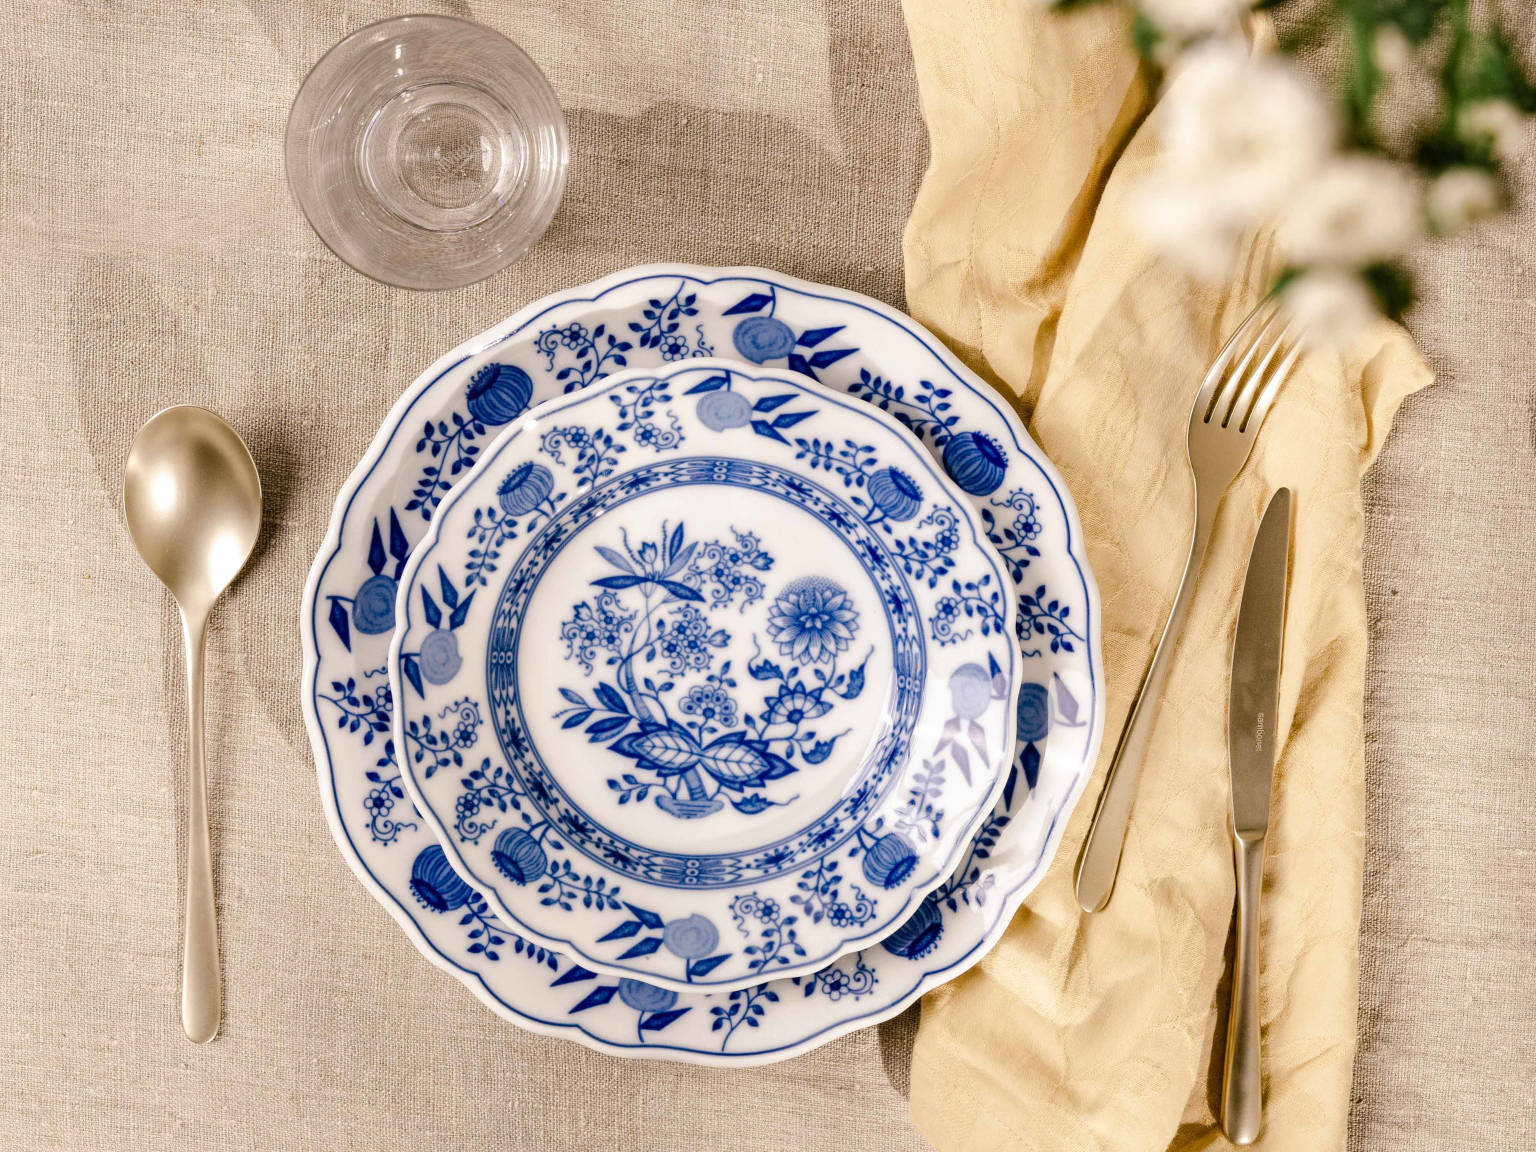 Zwei Hutschenreuther Blau Zwiebelmuster Teller aufeinander gestellt, links ein Suppenlöffel, rechts Gabel und Messer auf einer Leinenserviette und Leinen-Tischdecke, alles von oben fotografiert